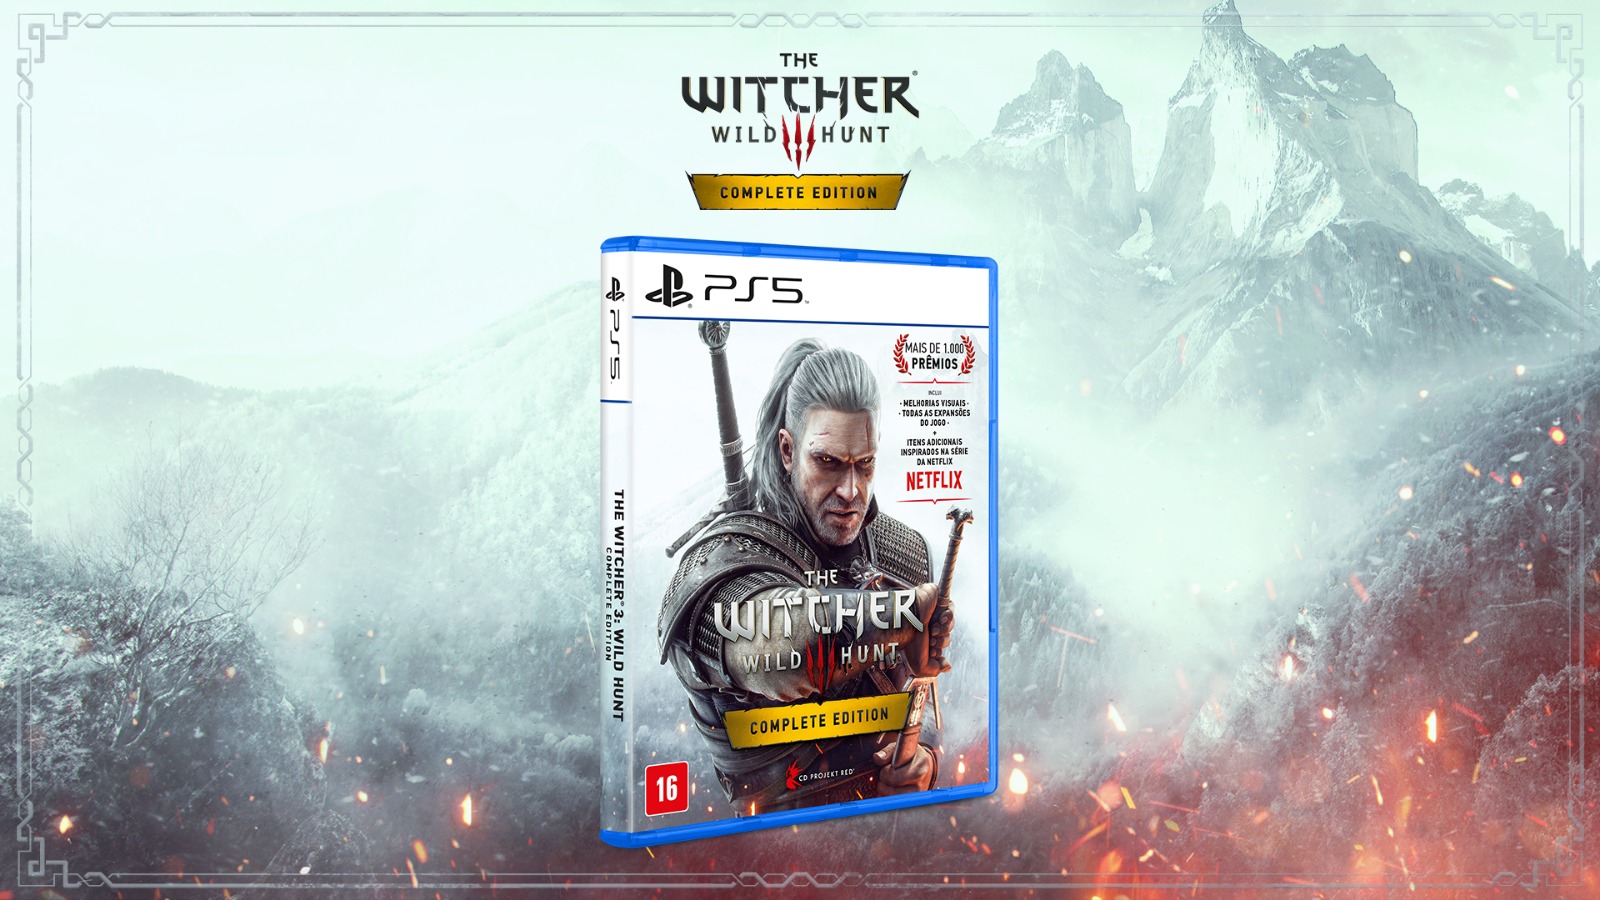 The Witcher 3: Wild Hunt - Complete Edition para Playstation 5 chega ao varejo em 20 de fevereiro